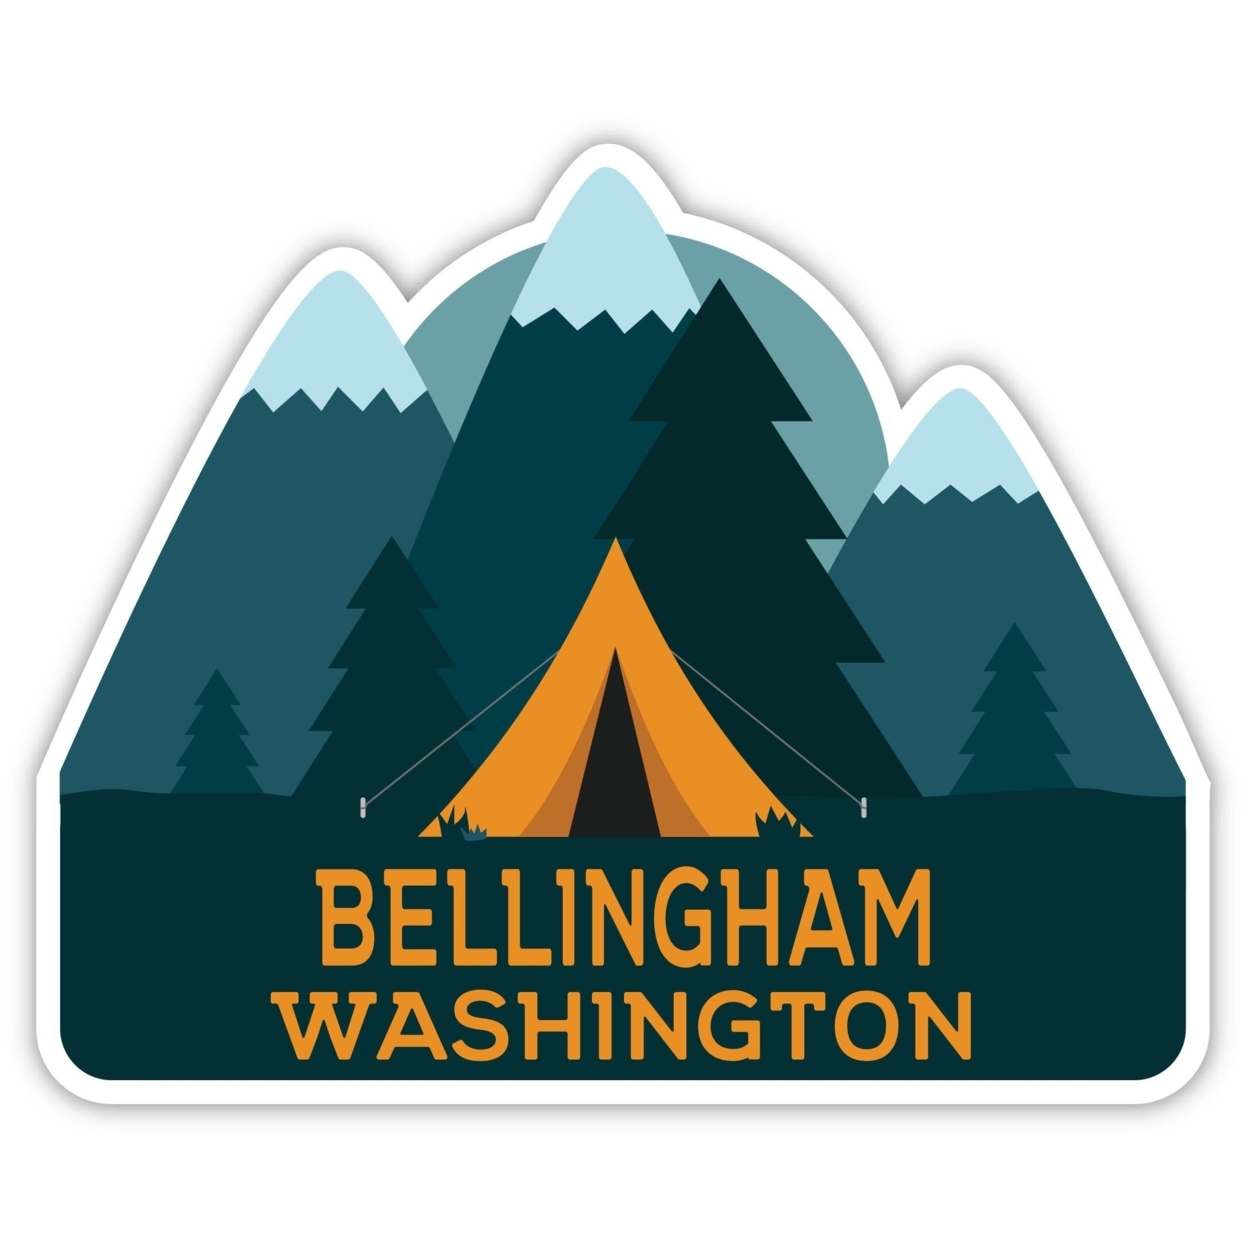 Bellingham Washington Souvenir Decorative Stickers (Choose Theme And Size) - Single Unit, 6-Inch, Tent